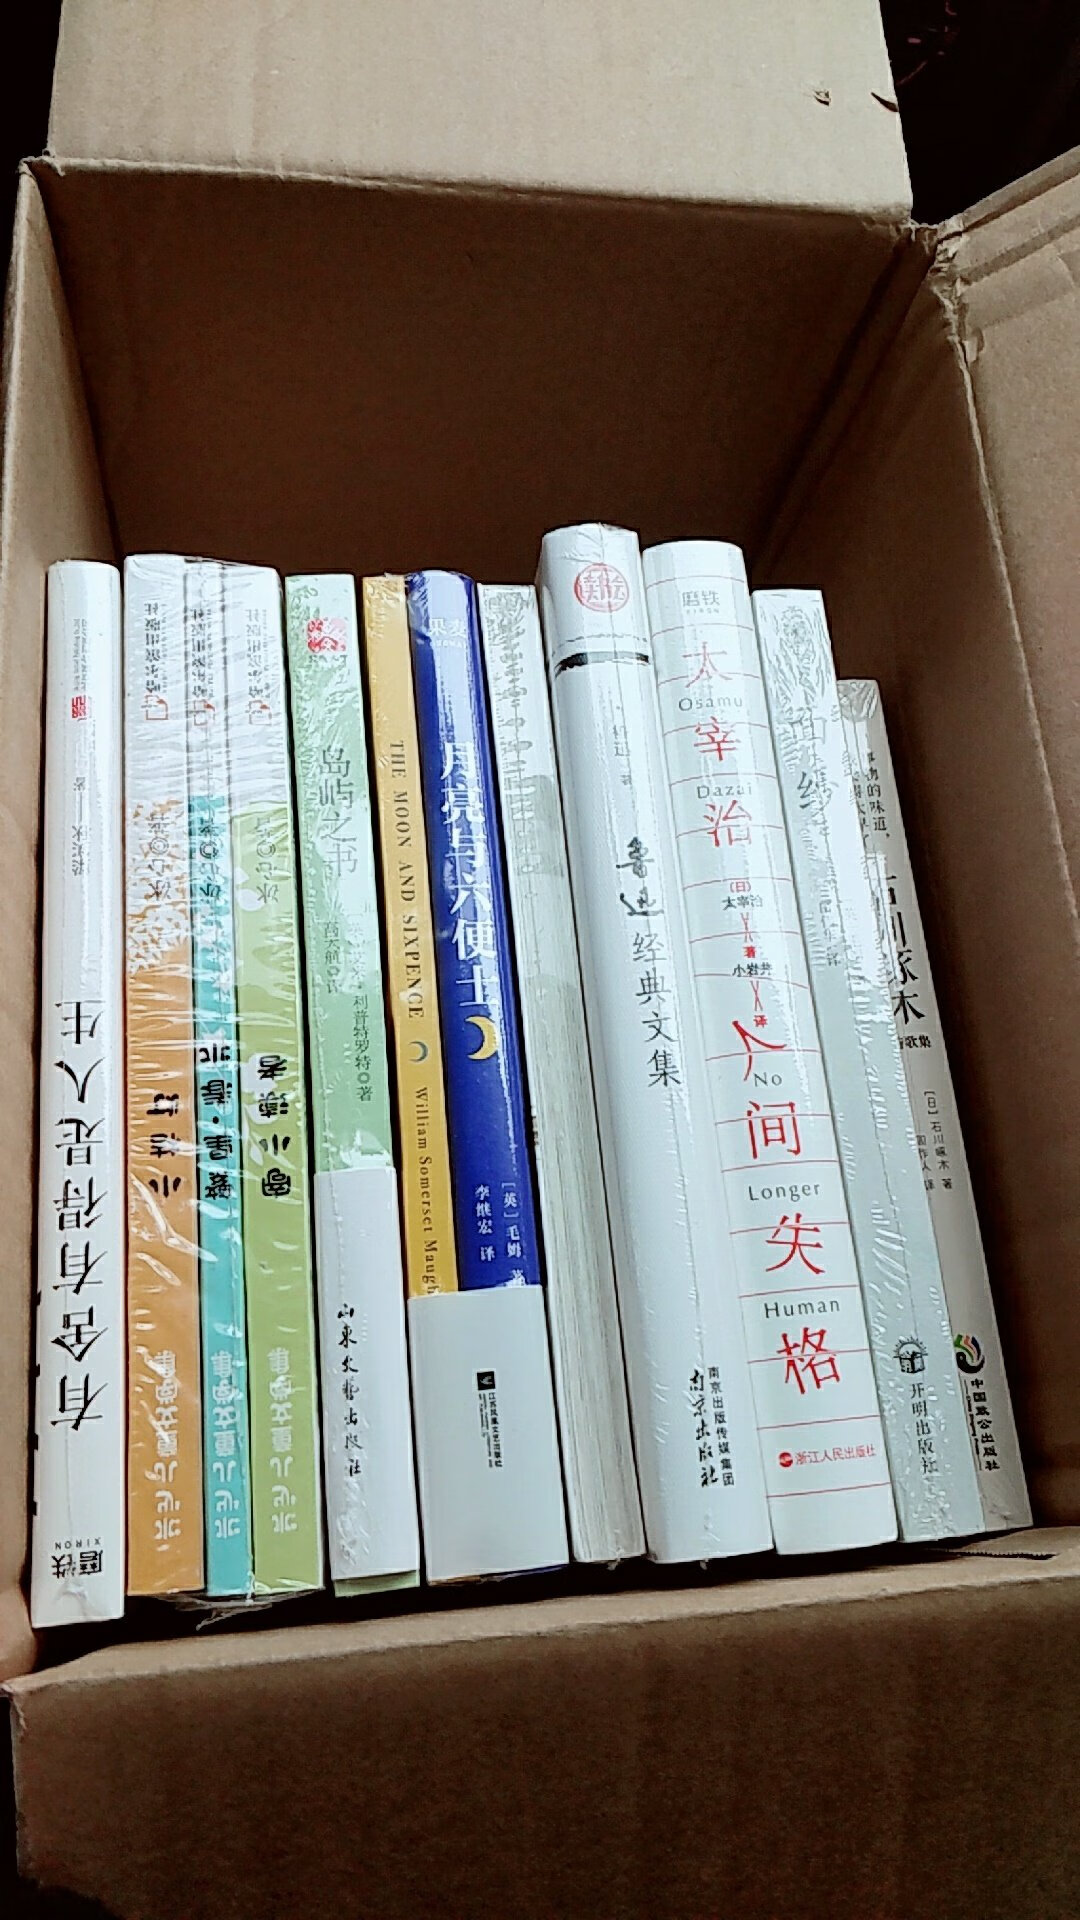 买了10几本书，每本都有塑料膜封好，感觉特别棒。